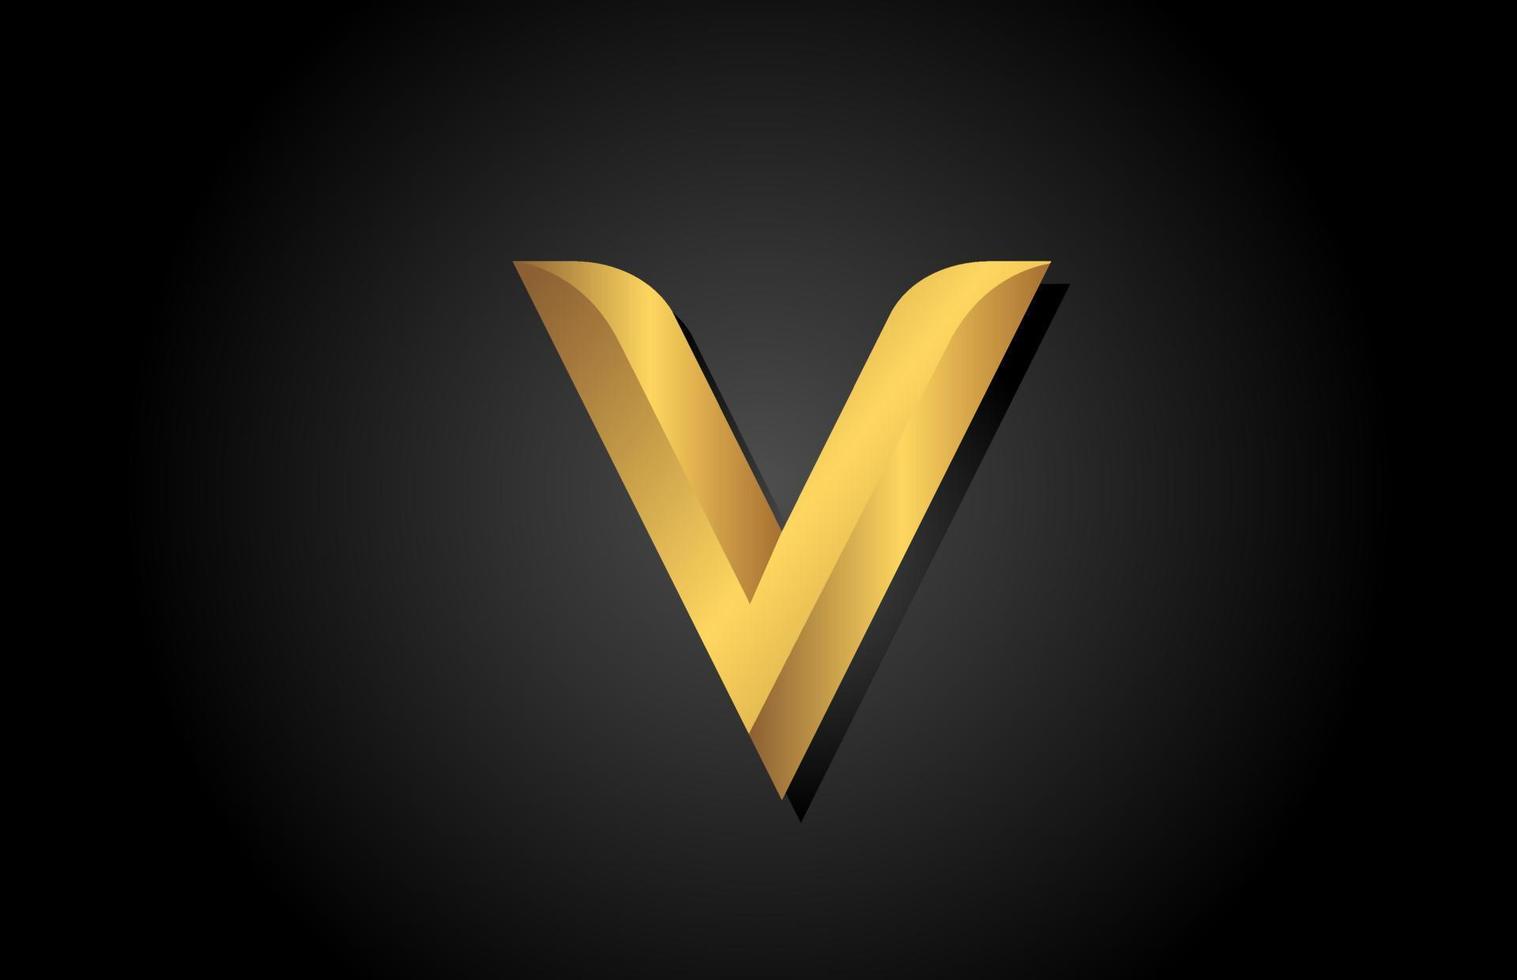 goud gouden v alfabet letter logo pictogram ontwerp. bedrijfssjabloon voor luxe zaken vector